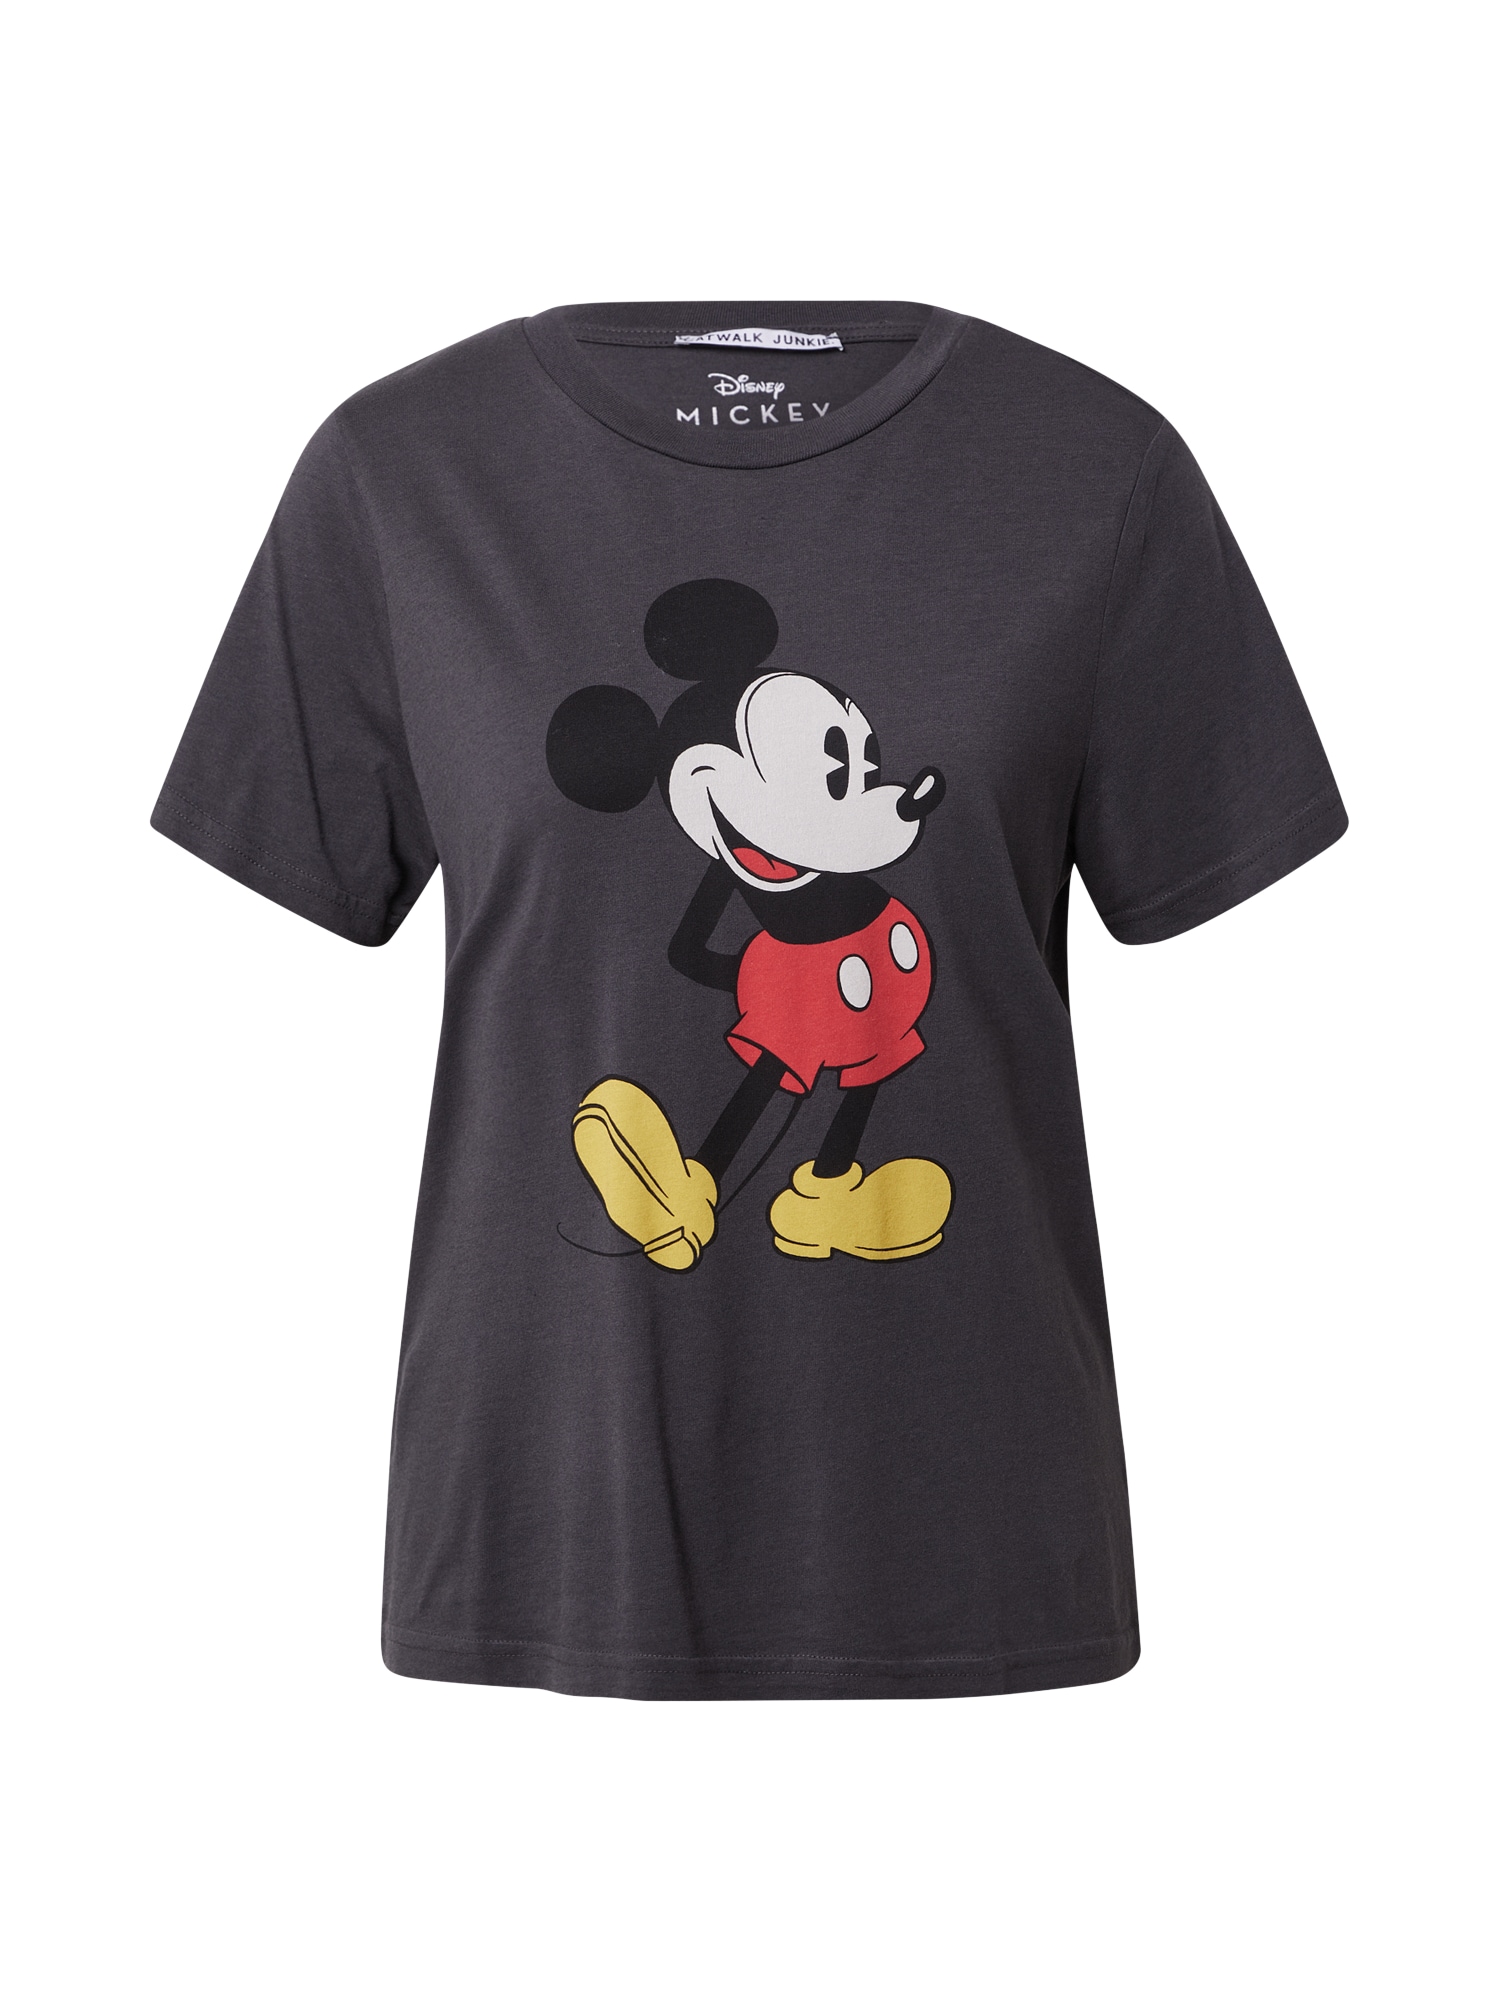 CATWALK JUNKIE Marškinėliai 'Mickey' antracito spalva / juoda / geltona / raudona / balta